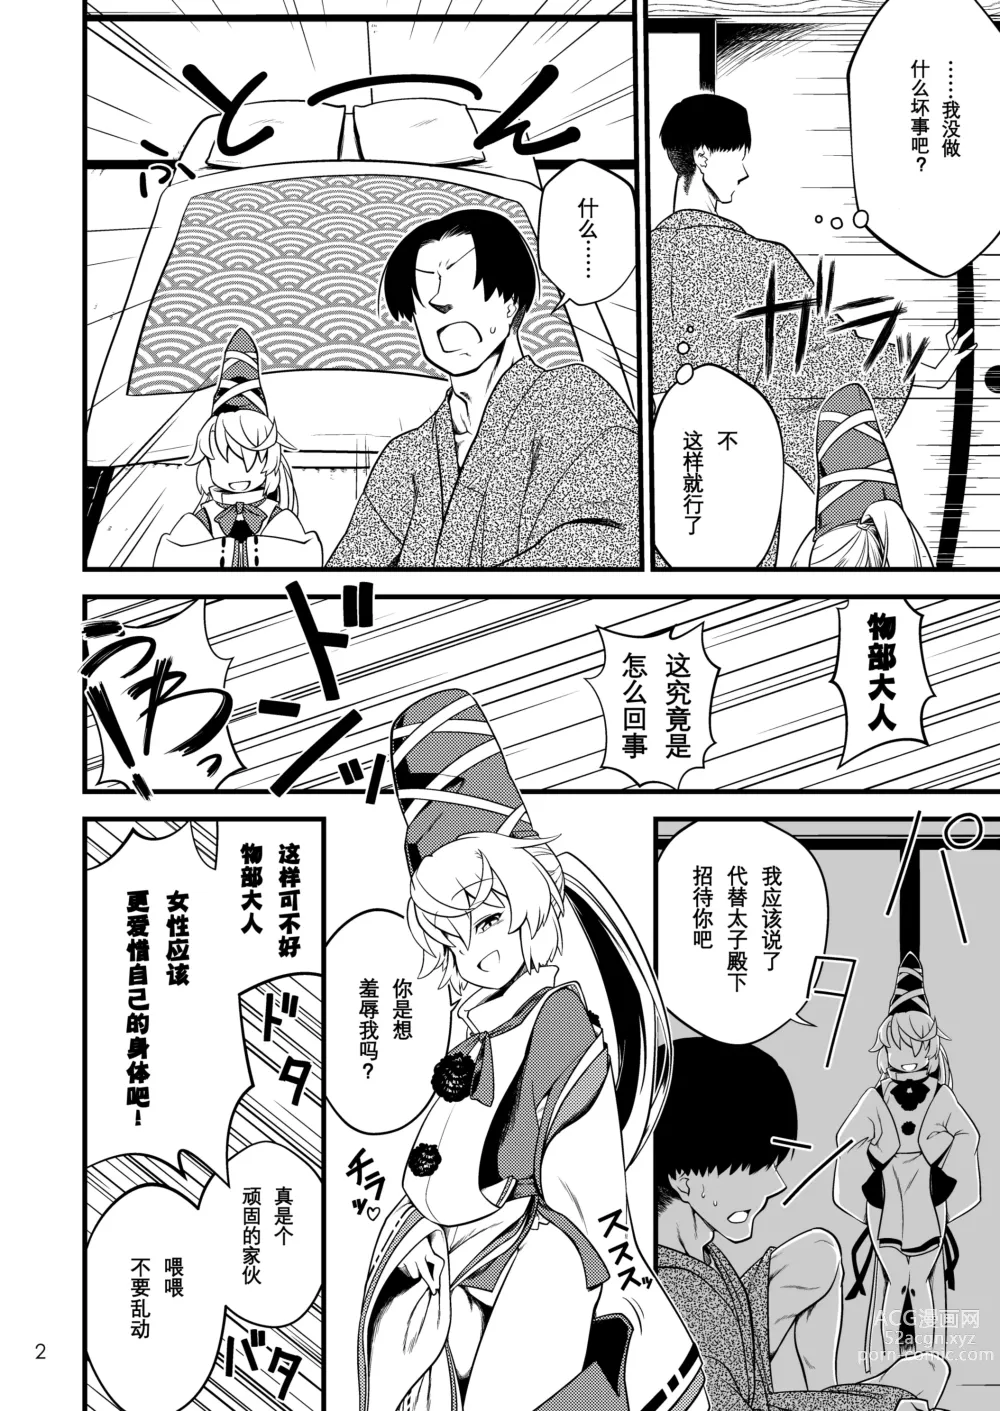 Page 4 of doujinshi Mononobe no Futo no Omotenashi